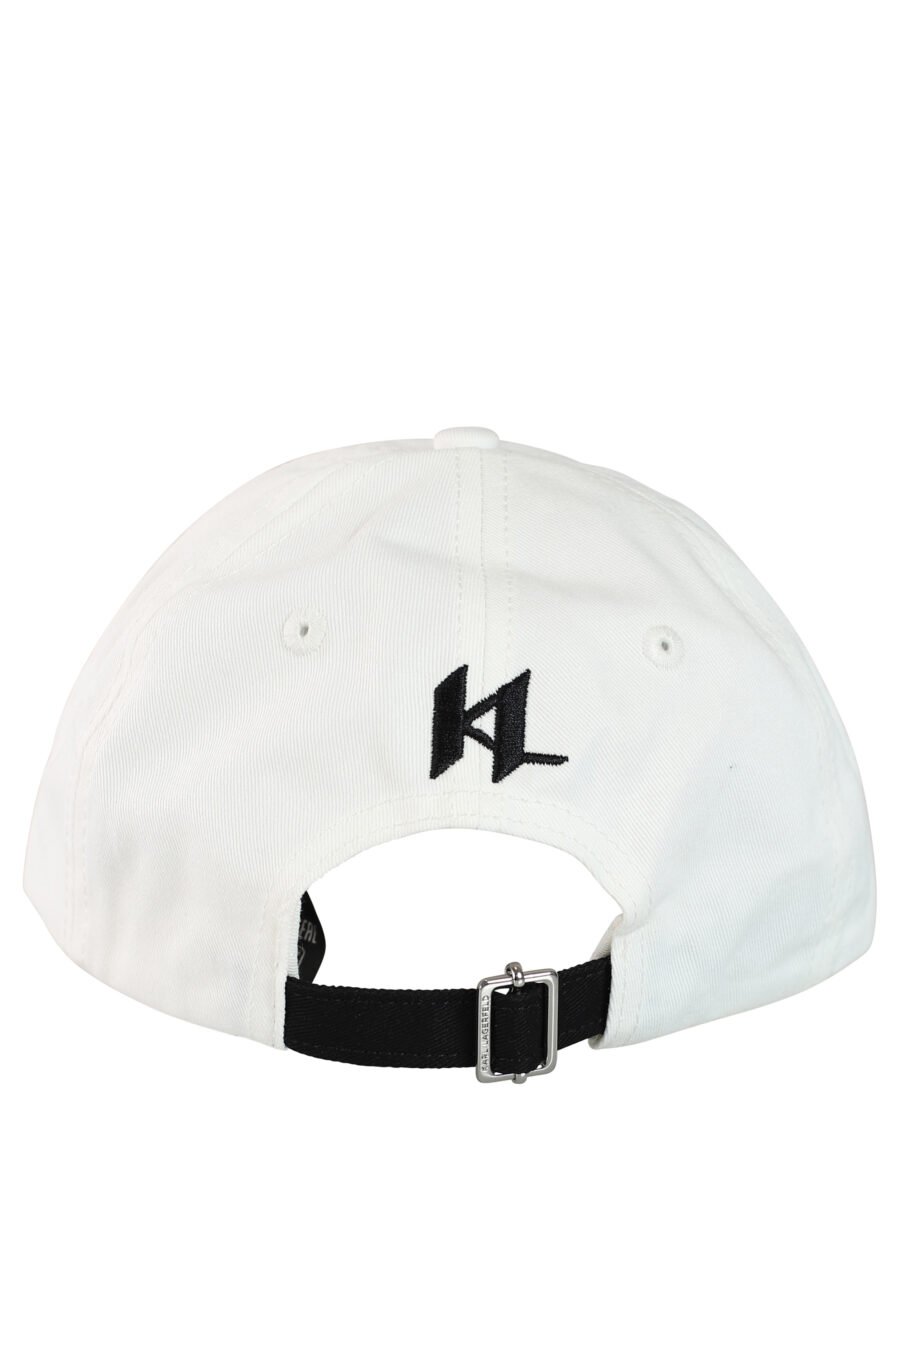 Weiße Mütze mit Logo auf dem Schirm "essential" - 8720744104940 2